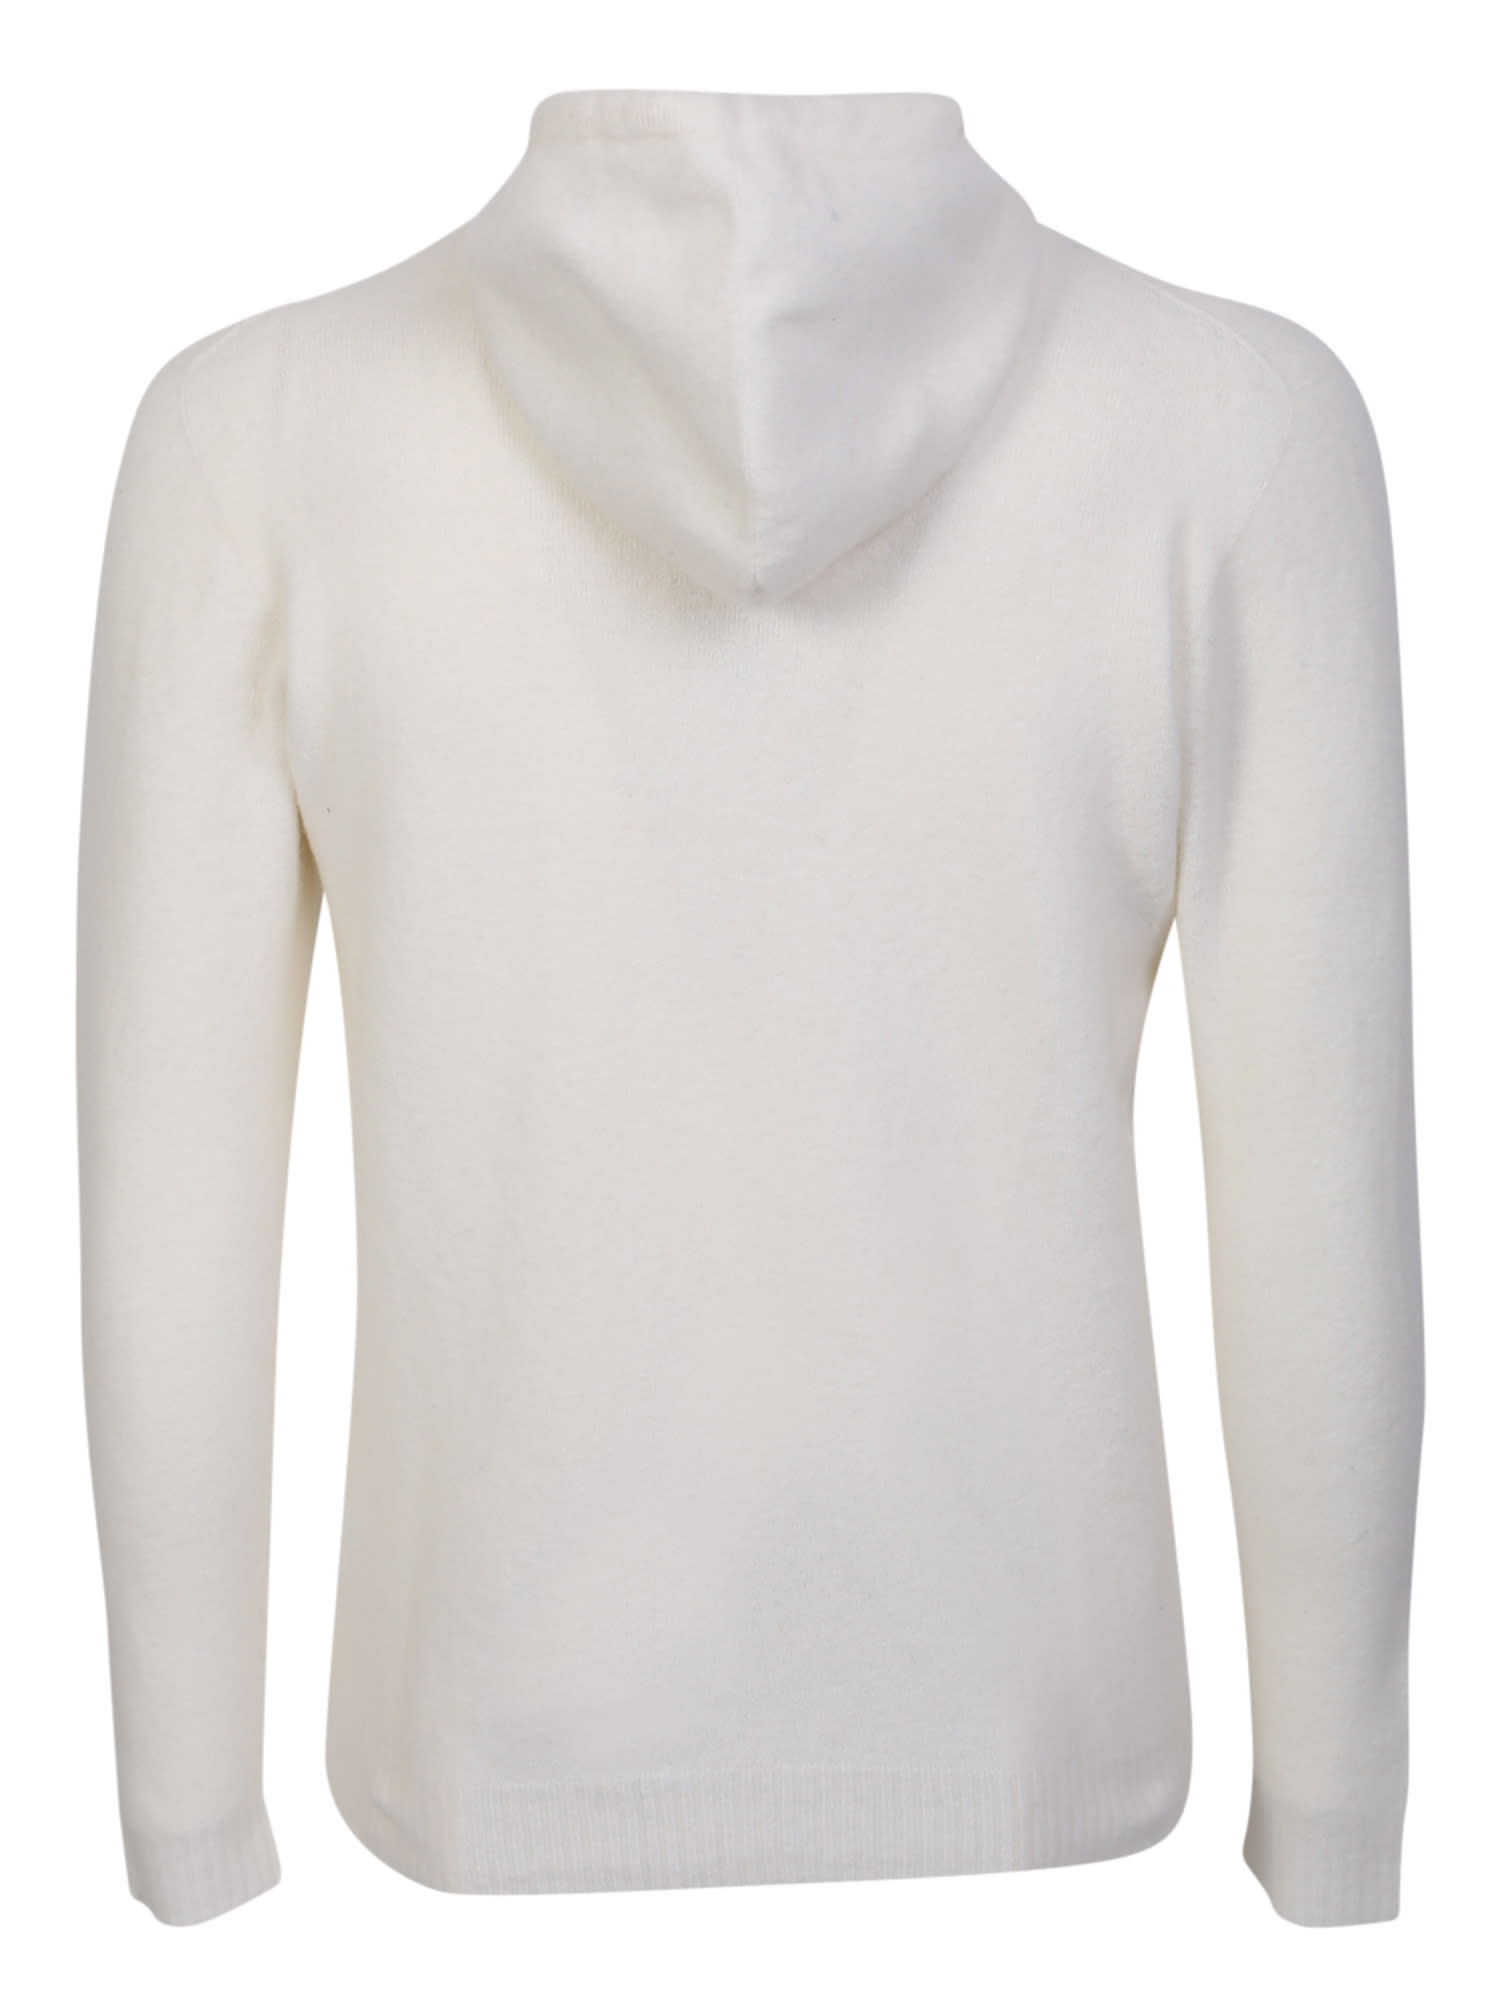 Shop Original Vintage Style Original Vintage White Hoodie Sweatshirt